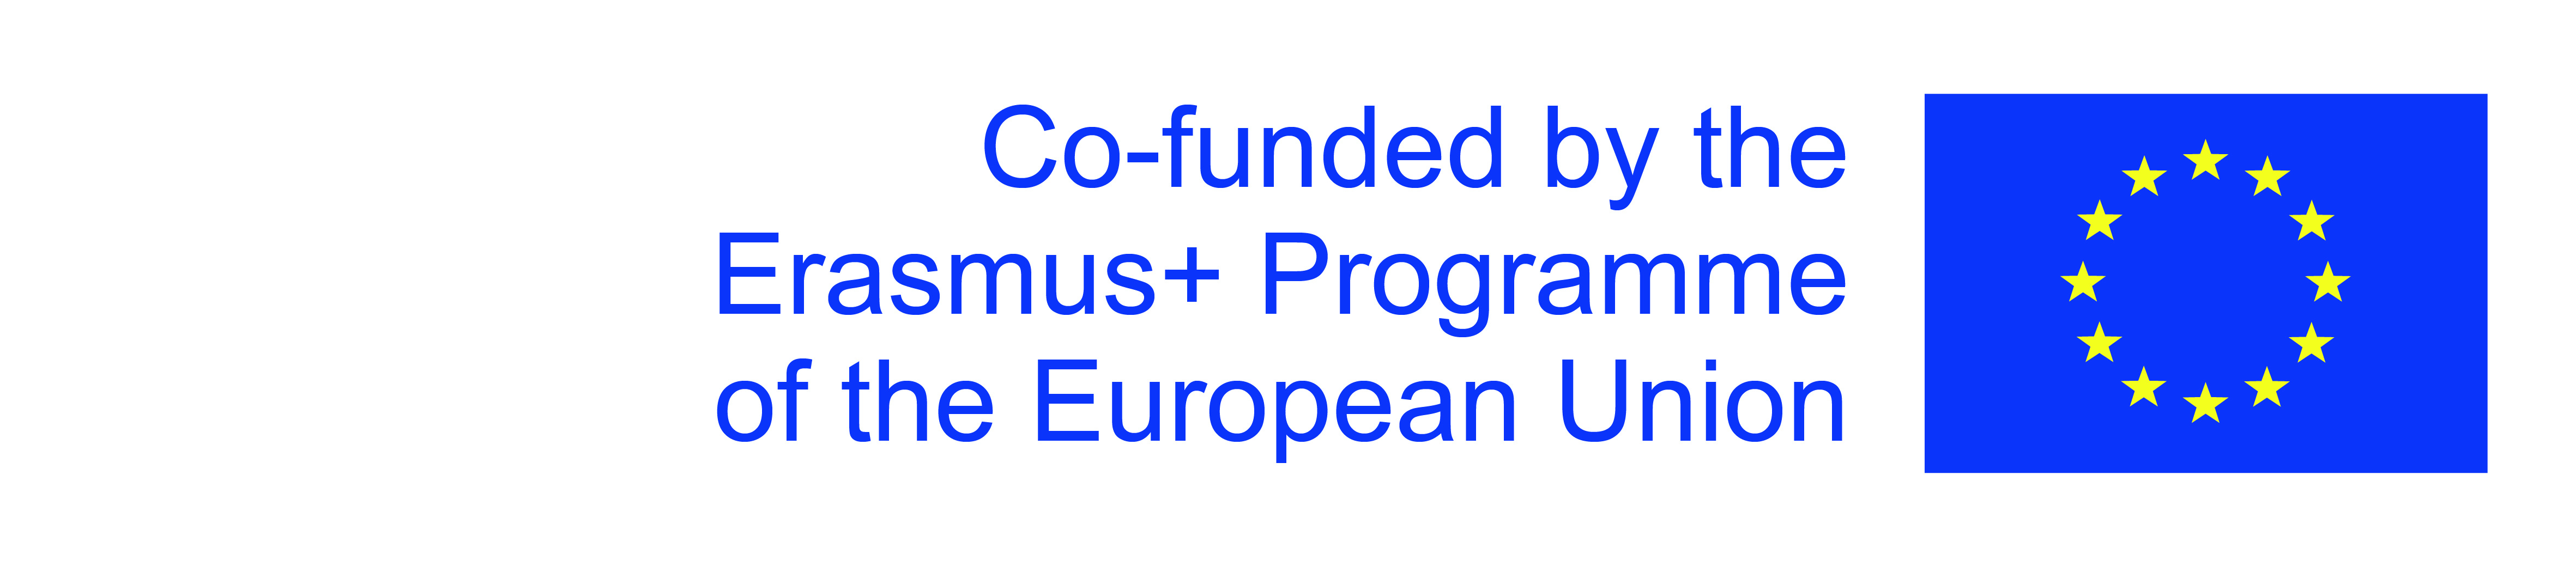 Napis Co-funded by the Erasmus+ Programme of the European Union i flaga Unii Europejskiej